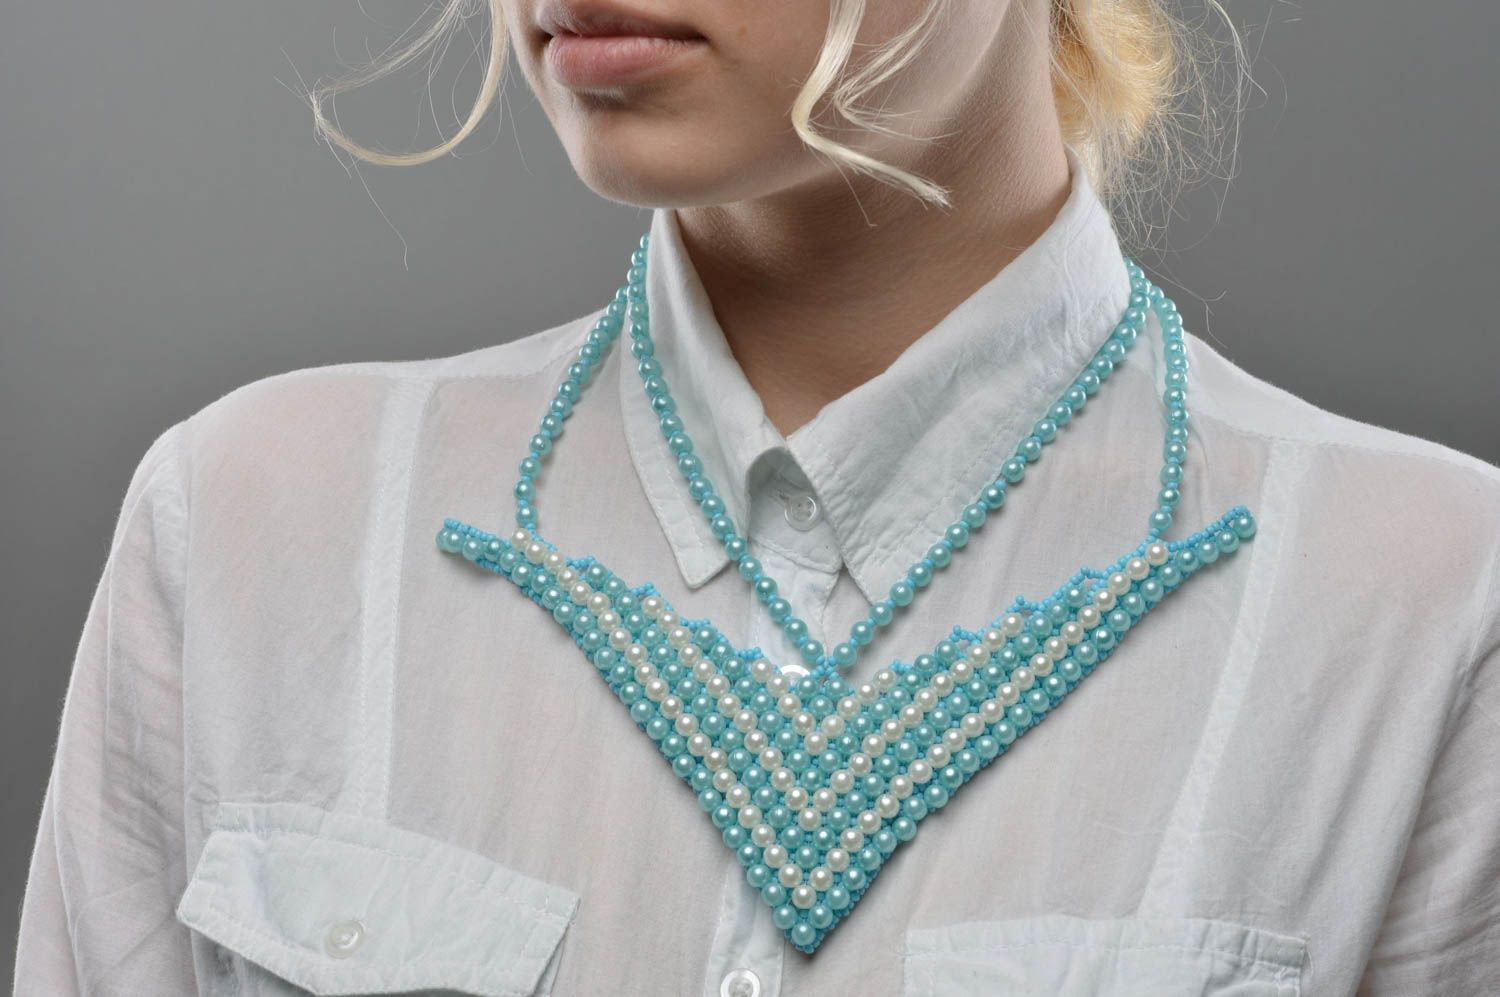 Handmade beaded necklace blue and white elegant accessory stylish jewelry photo 5